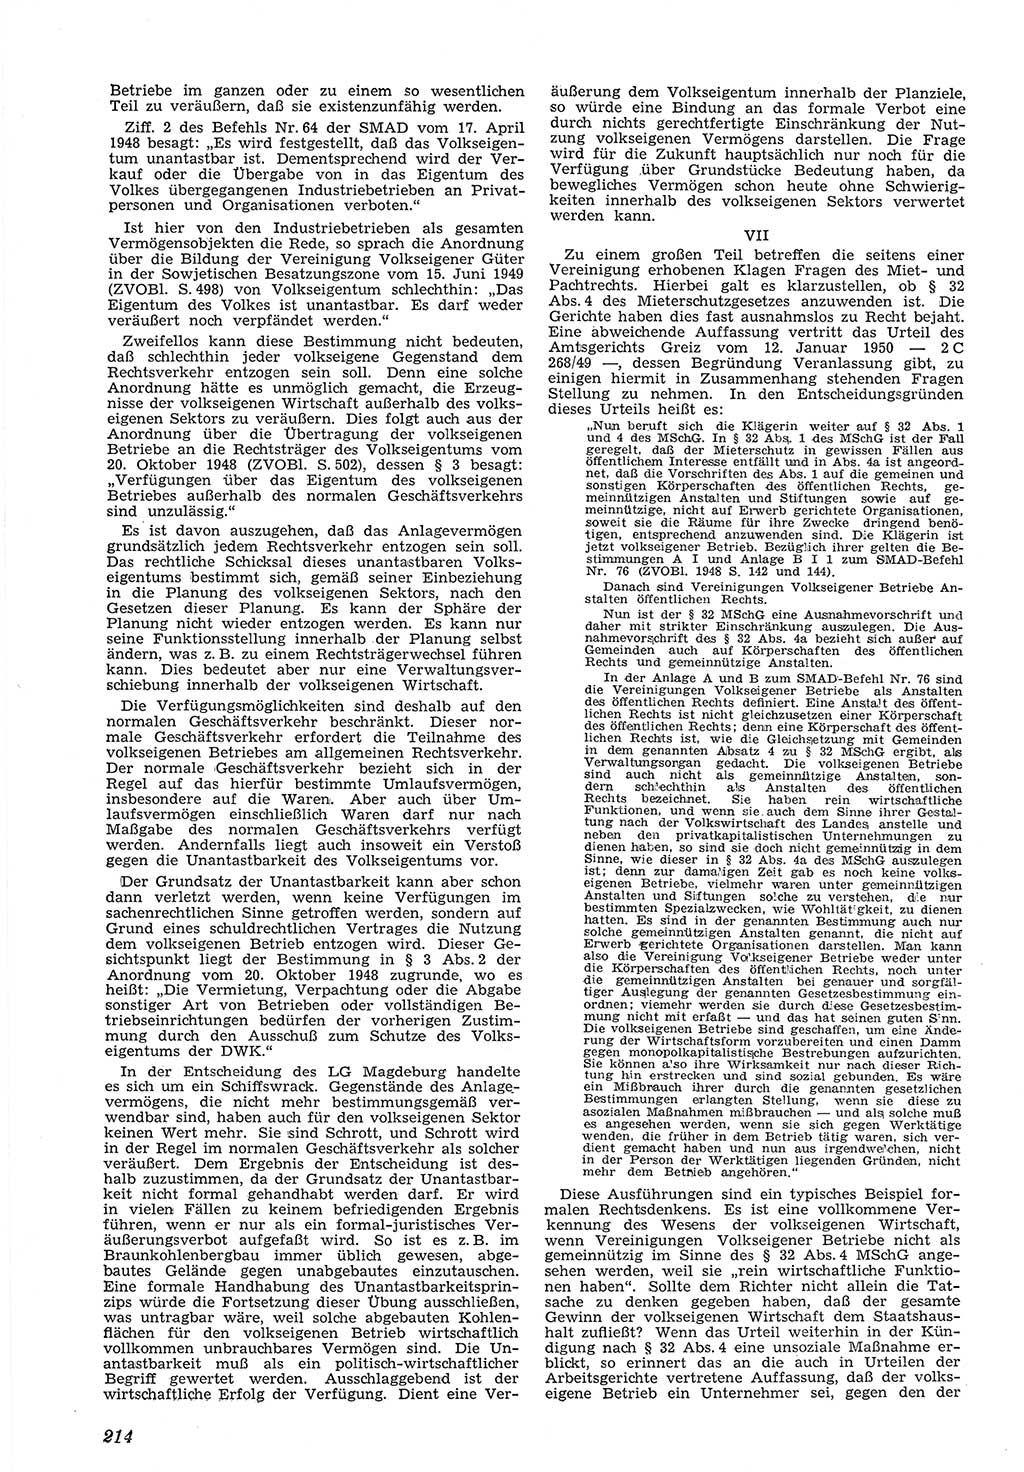 Neue Justiz (NJ), Zeitschrift für Recht und Rechtswissenschaft [Deutsche Demokratische Republik (DDR)], 5. Jahrgang 1951, Seite 214 (NJ DDR 1951, S. 214)